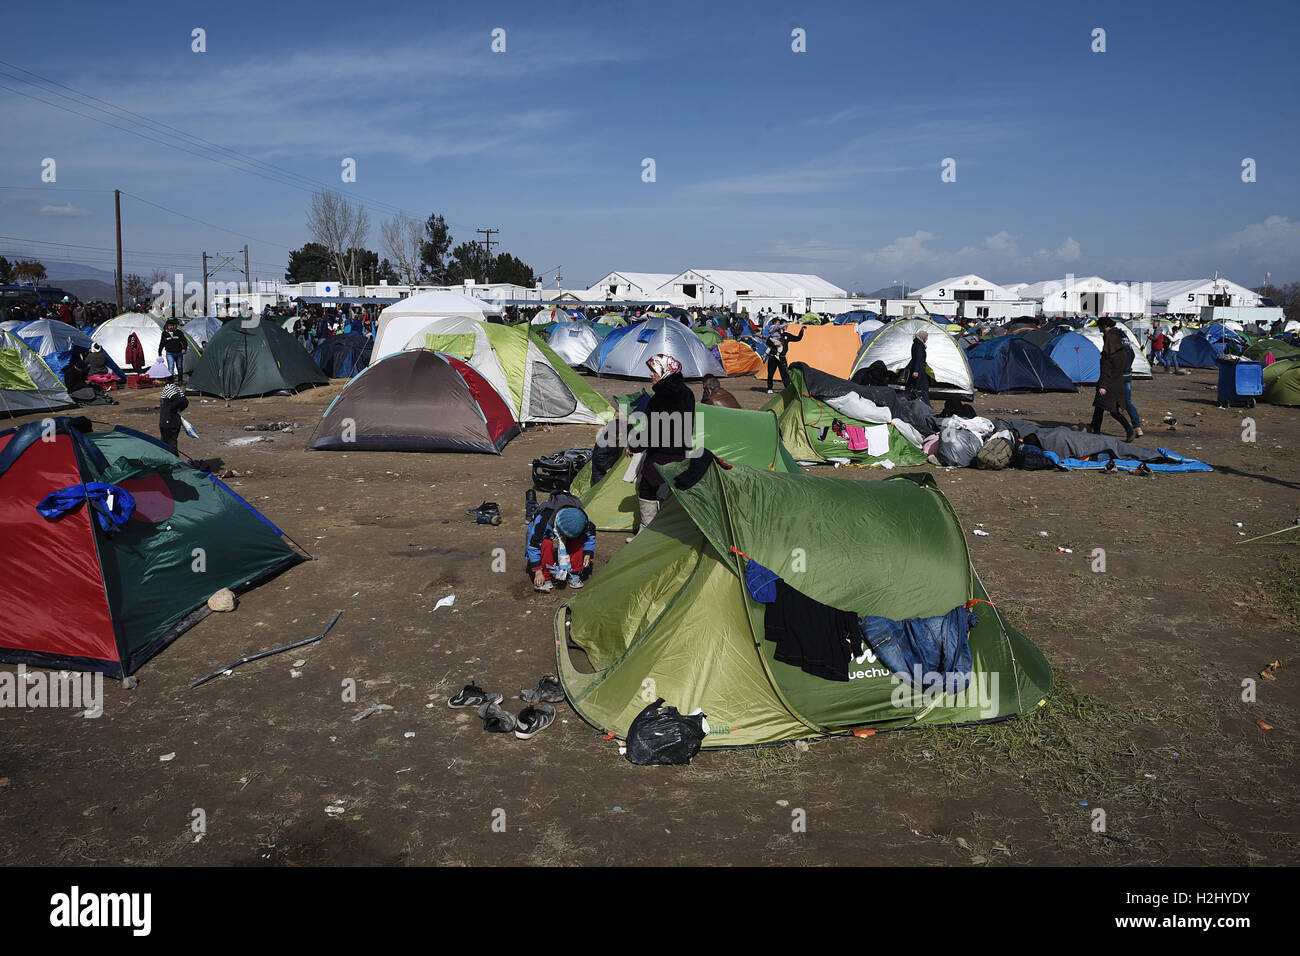 Le tende sono erette all'interno di un campo in un campo di rifugiati al nord del villaggio greco di Idomeni, alla Greca confine macedone. Migliaia di rifugiati e migranti sono rimasti bloccati per mesi al Greco confine macedone, presso il campo di rifugiati nei pressi del villaggio di Idomeni, fino a quando il governo greco ha deciso di evacuare l'area. Foto Stock